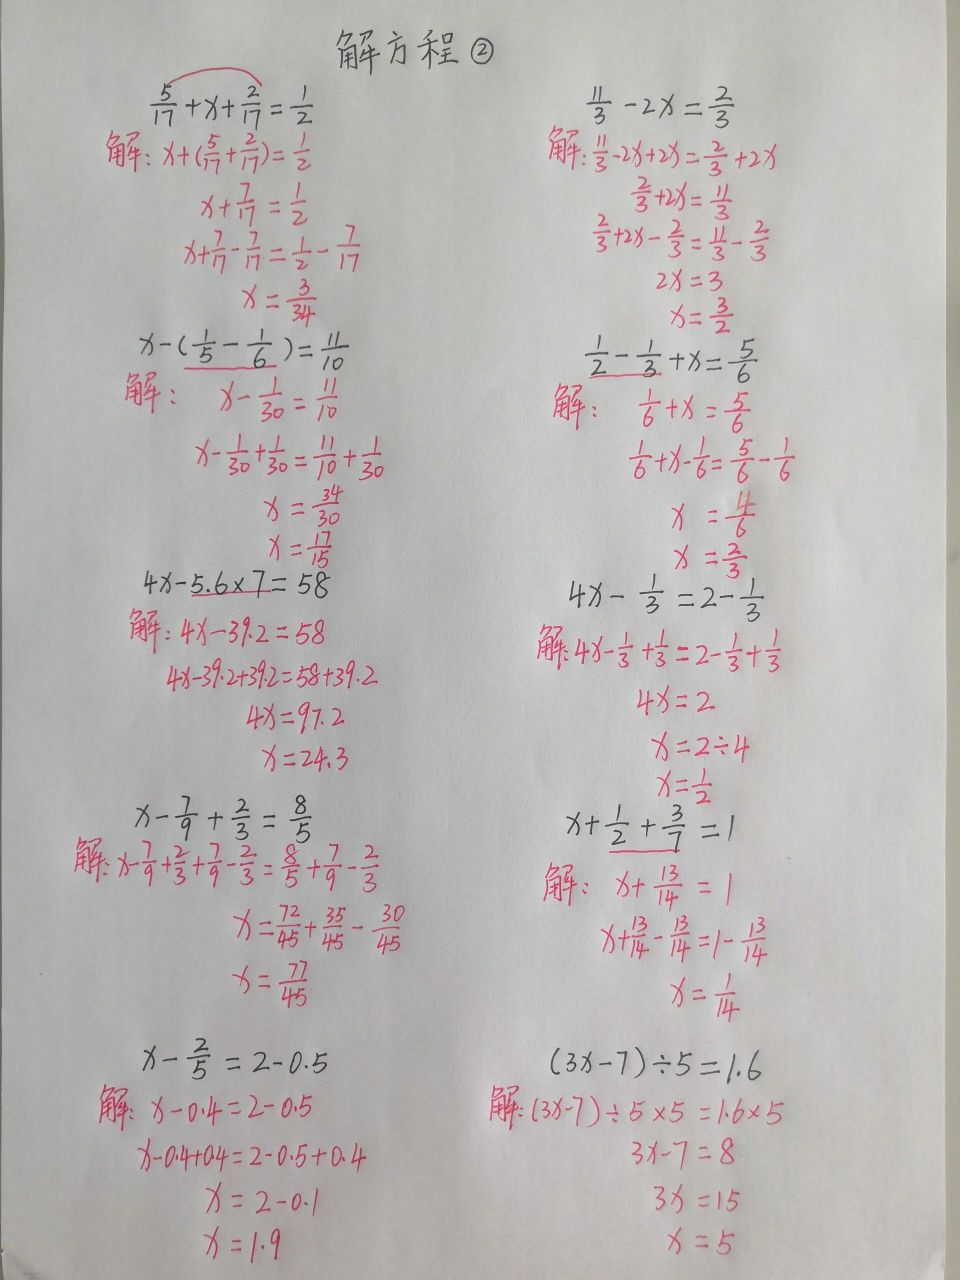 分式方程题目及答案图片